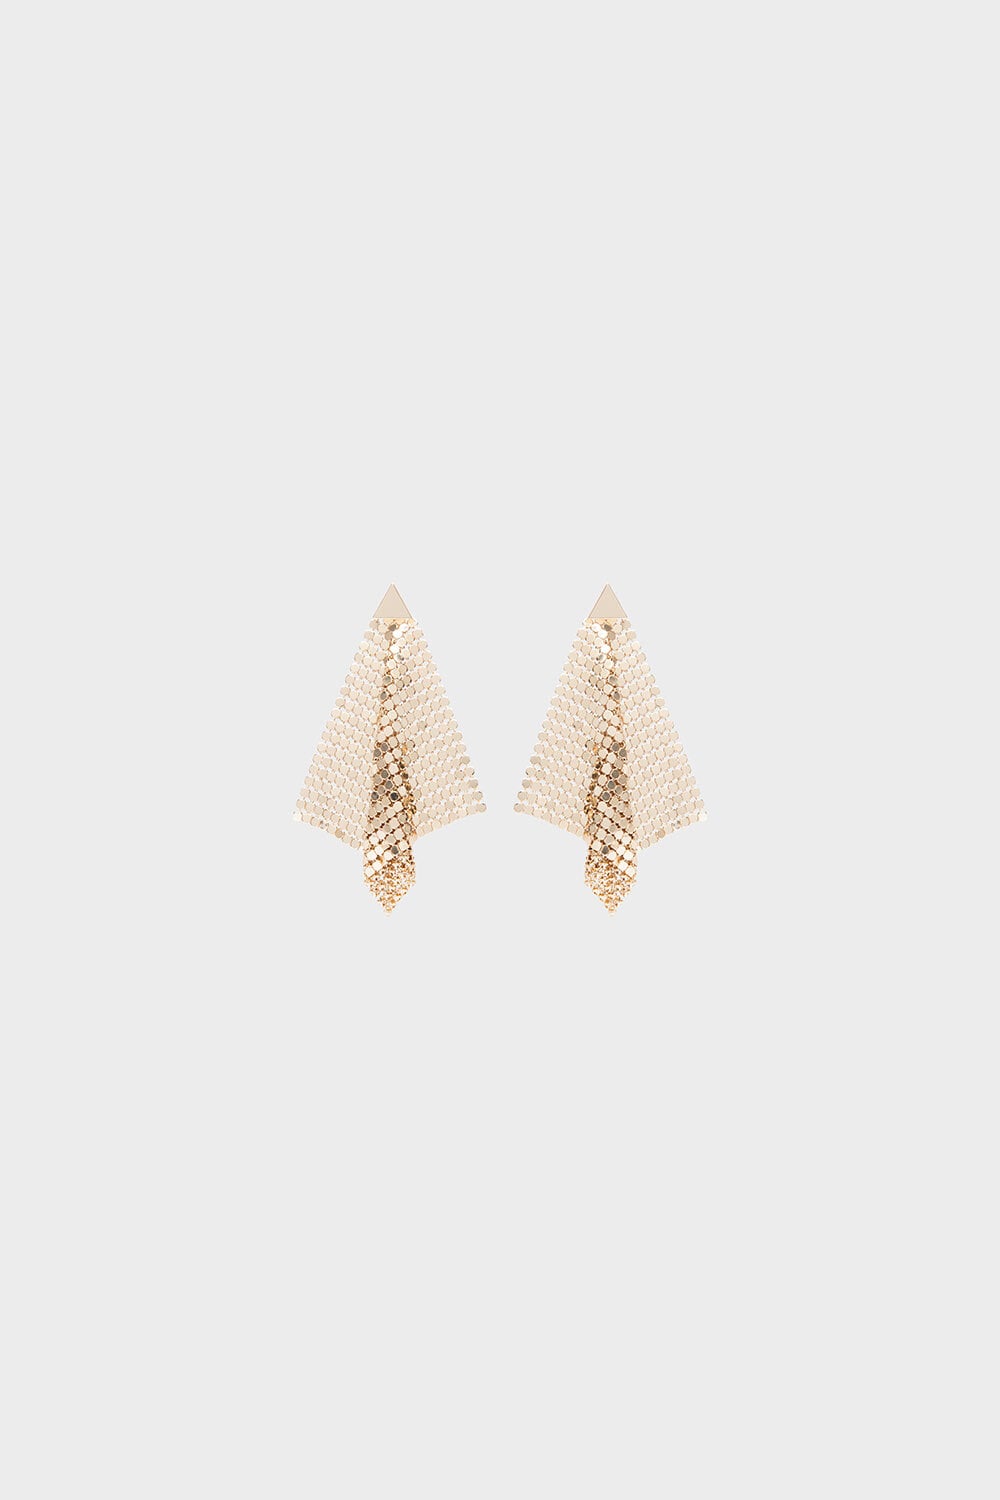 Capella Earrings